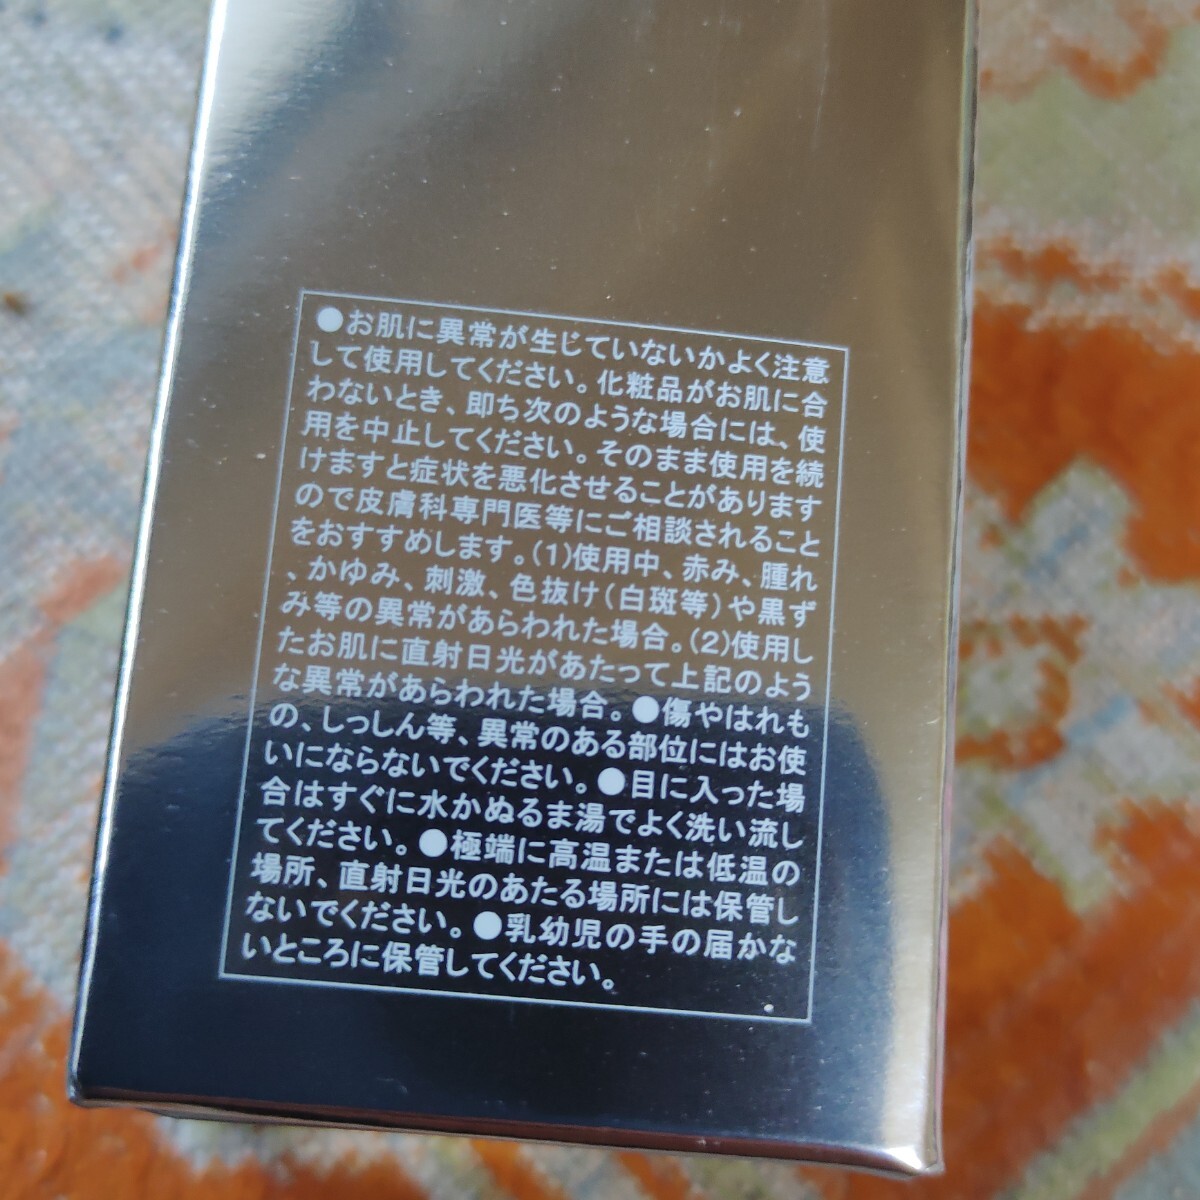  нераспечатанный товар vi - cosme tiks* очищение 120ml обычная цена 6000 иен сделано в Японии 